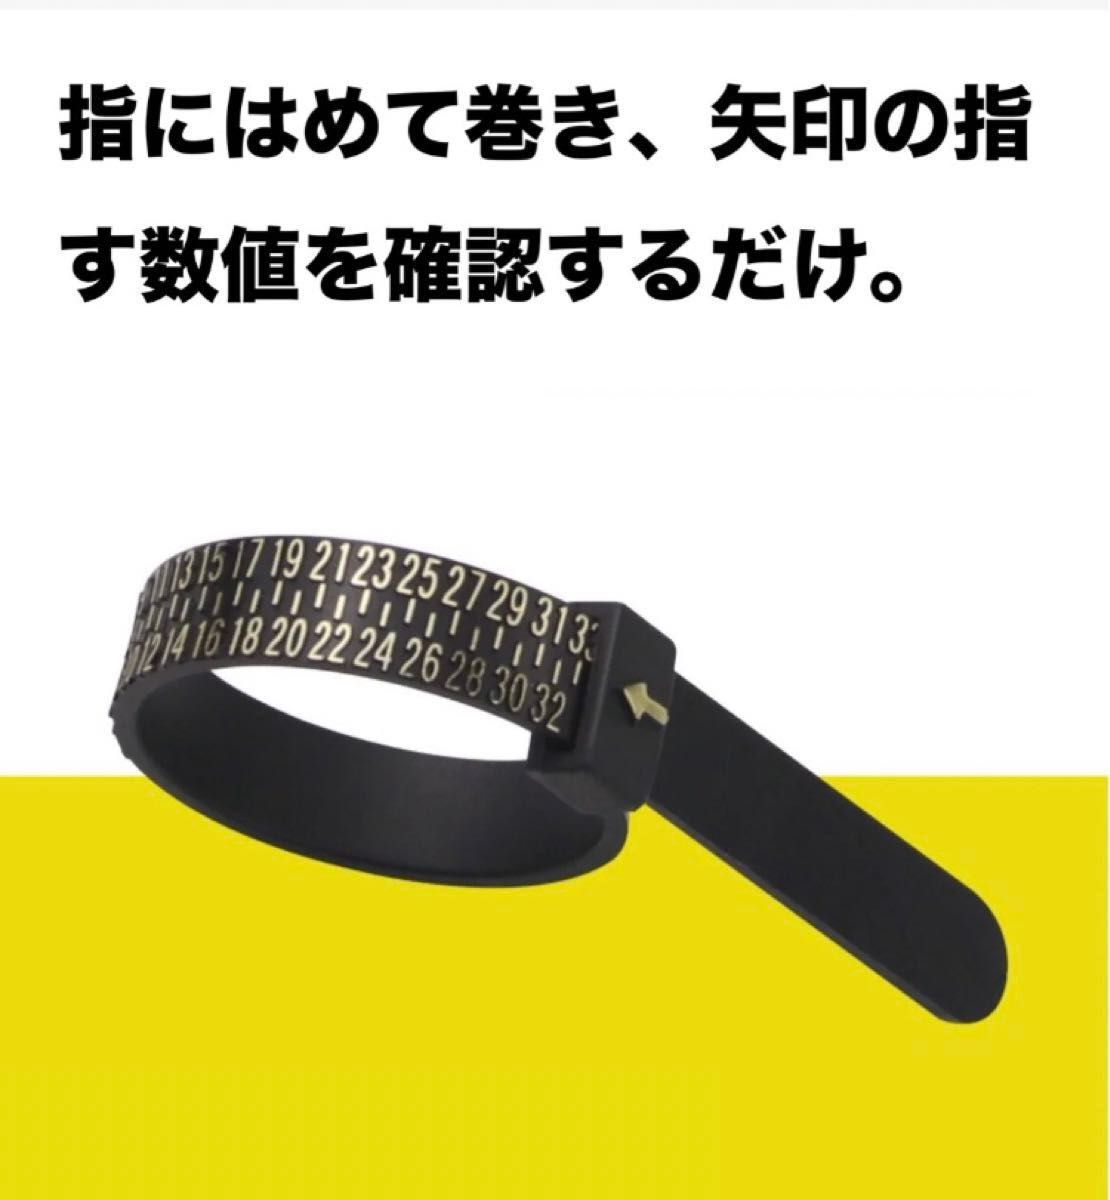 リングゲージ 指輪 リングサイズ バンド 計測 日本標準規格 ベルト型 黒 贈物